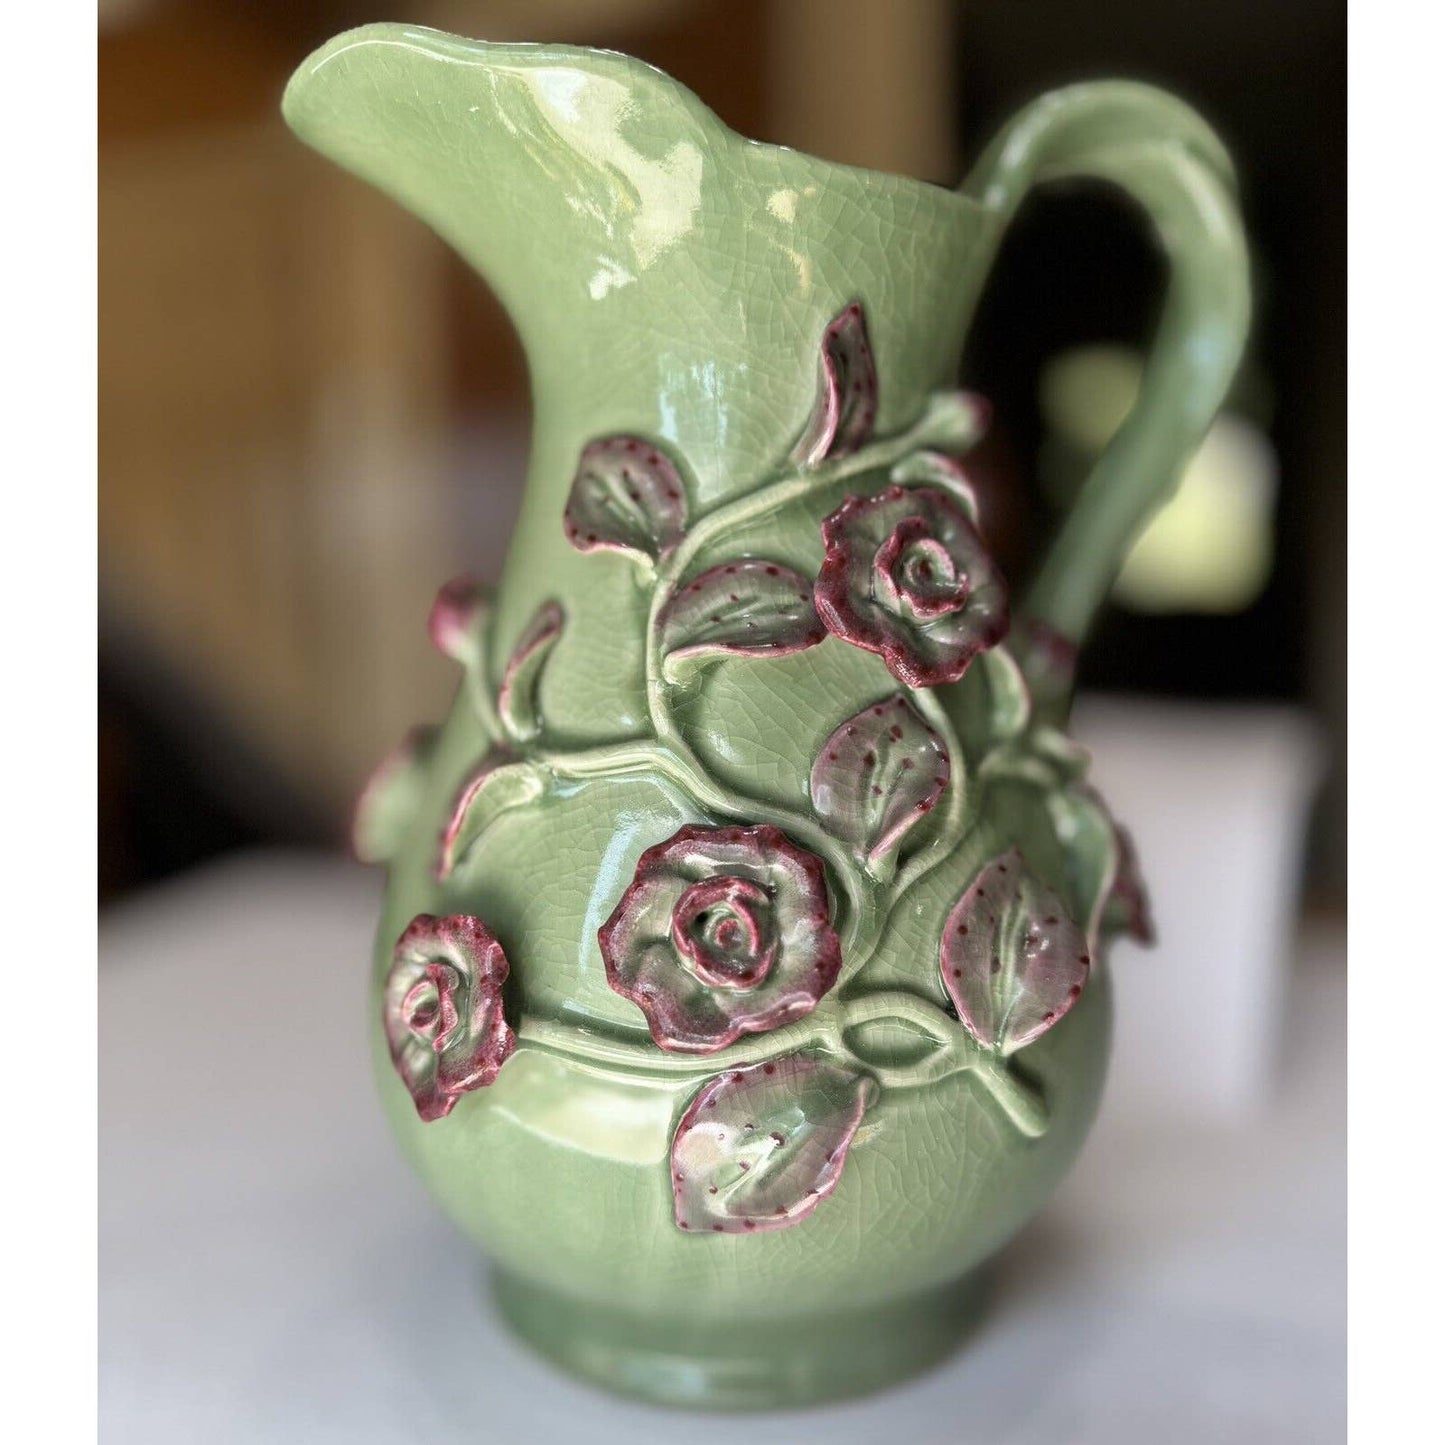 UnknownLarge Crackle Glazed Ceramic Green And Pink Floral Decorative Pitcher - Black Dog Vintage